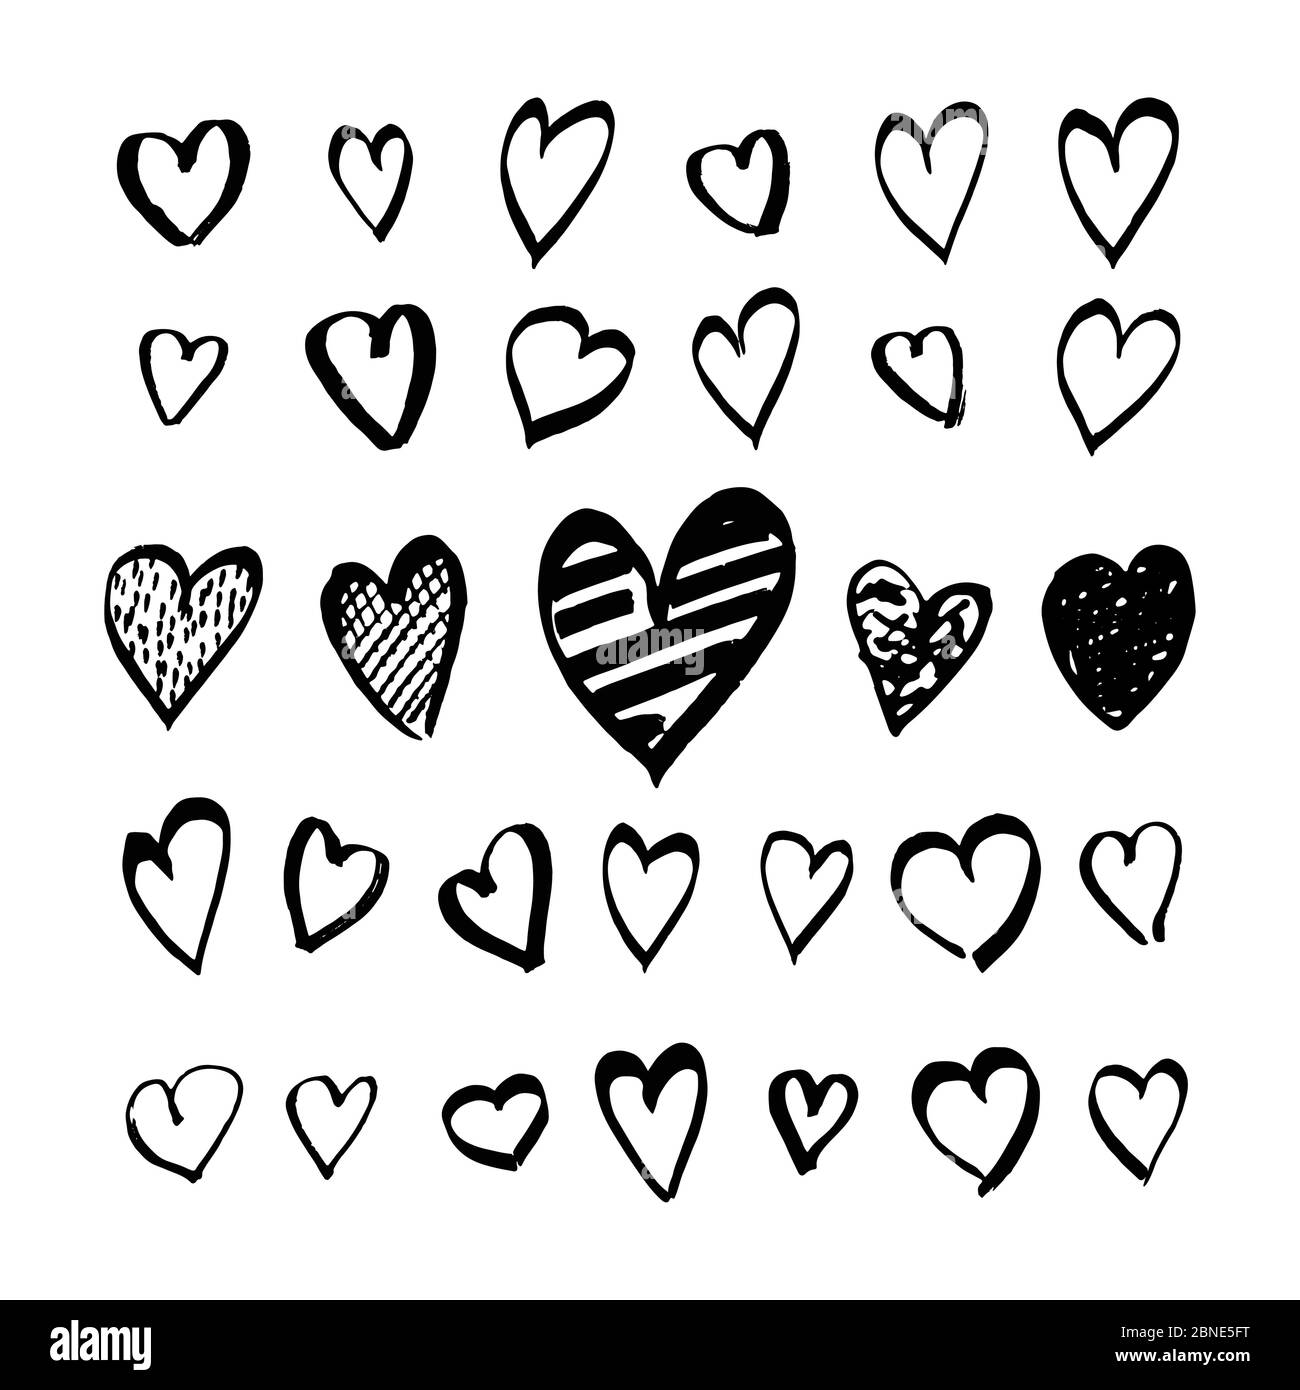 Herz-Symbole von Hand gezeichnet Set in Doodle-Stil. Skizzenhafte Designelemente für Valentinstag oder Hochzeit. Schwarze Love-Symbole auf Weiß isoliert. Vektor-eps8 i Stock Vektor